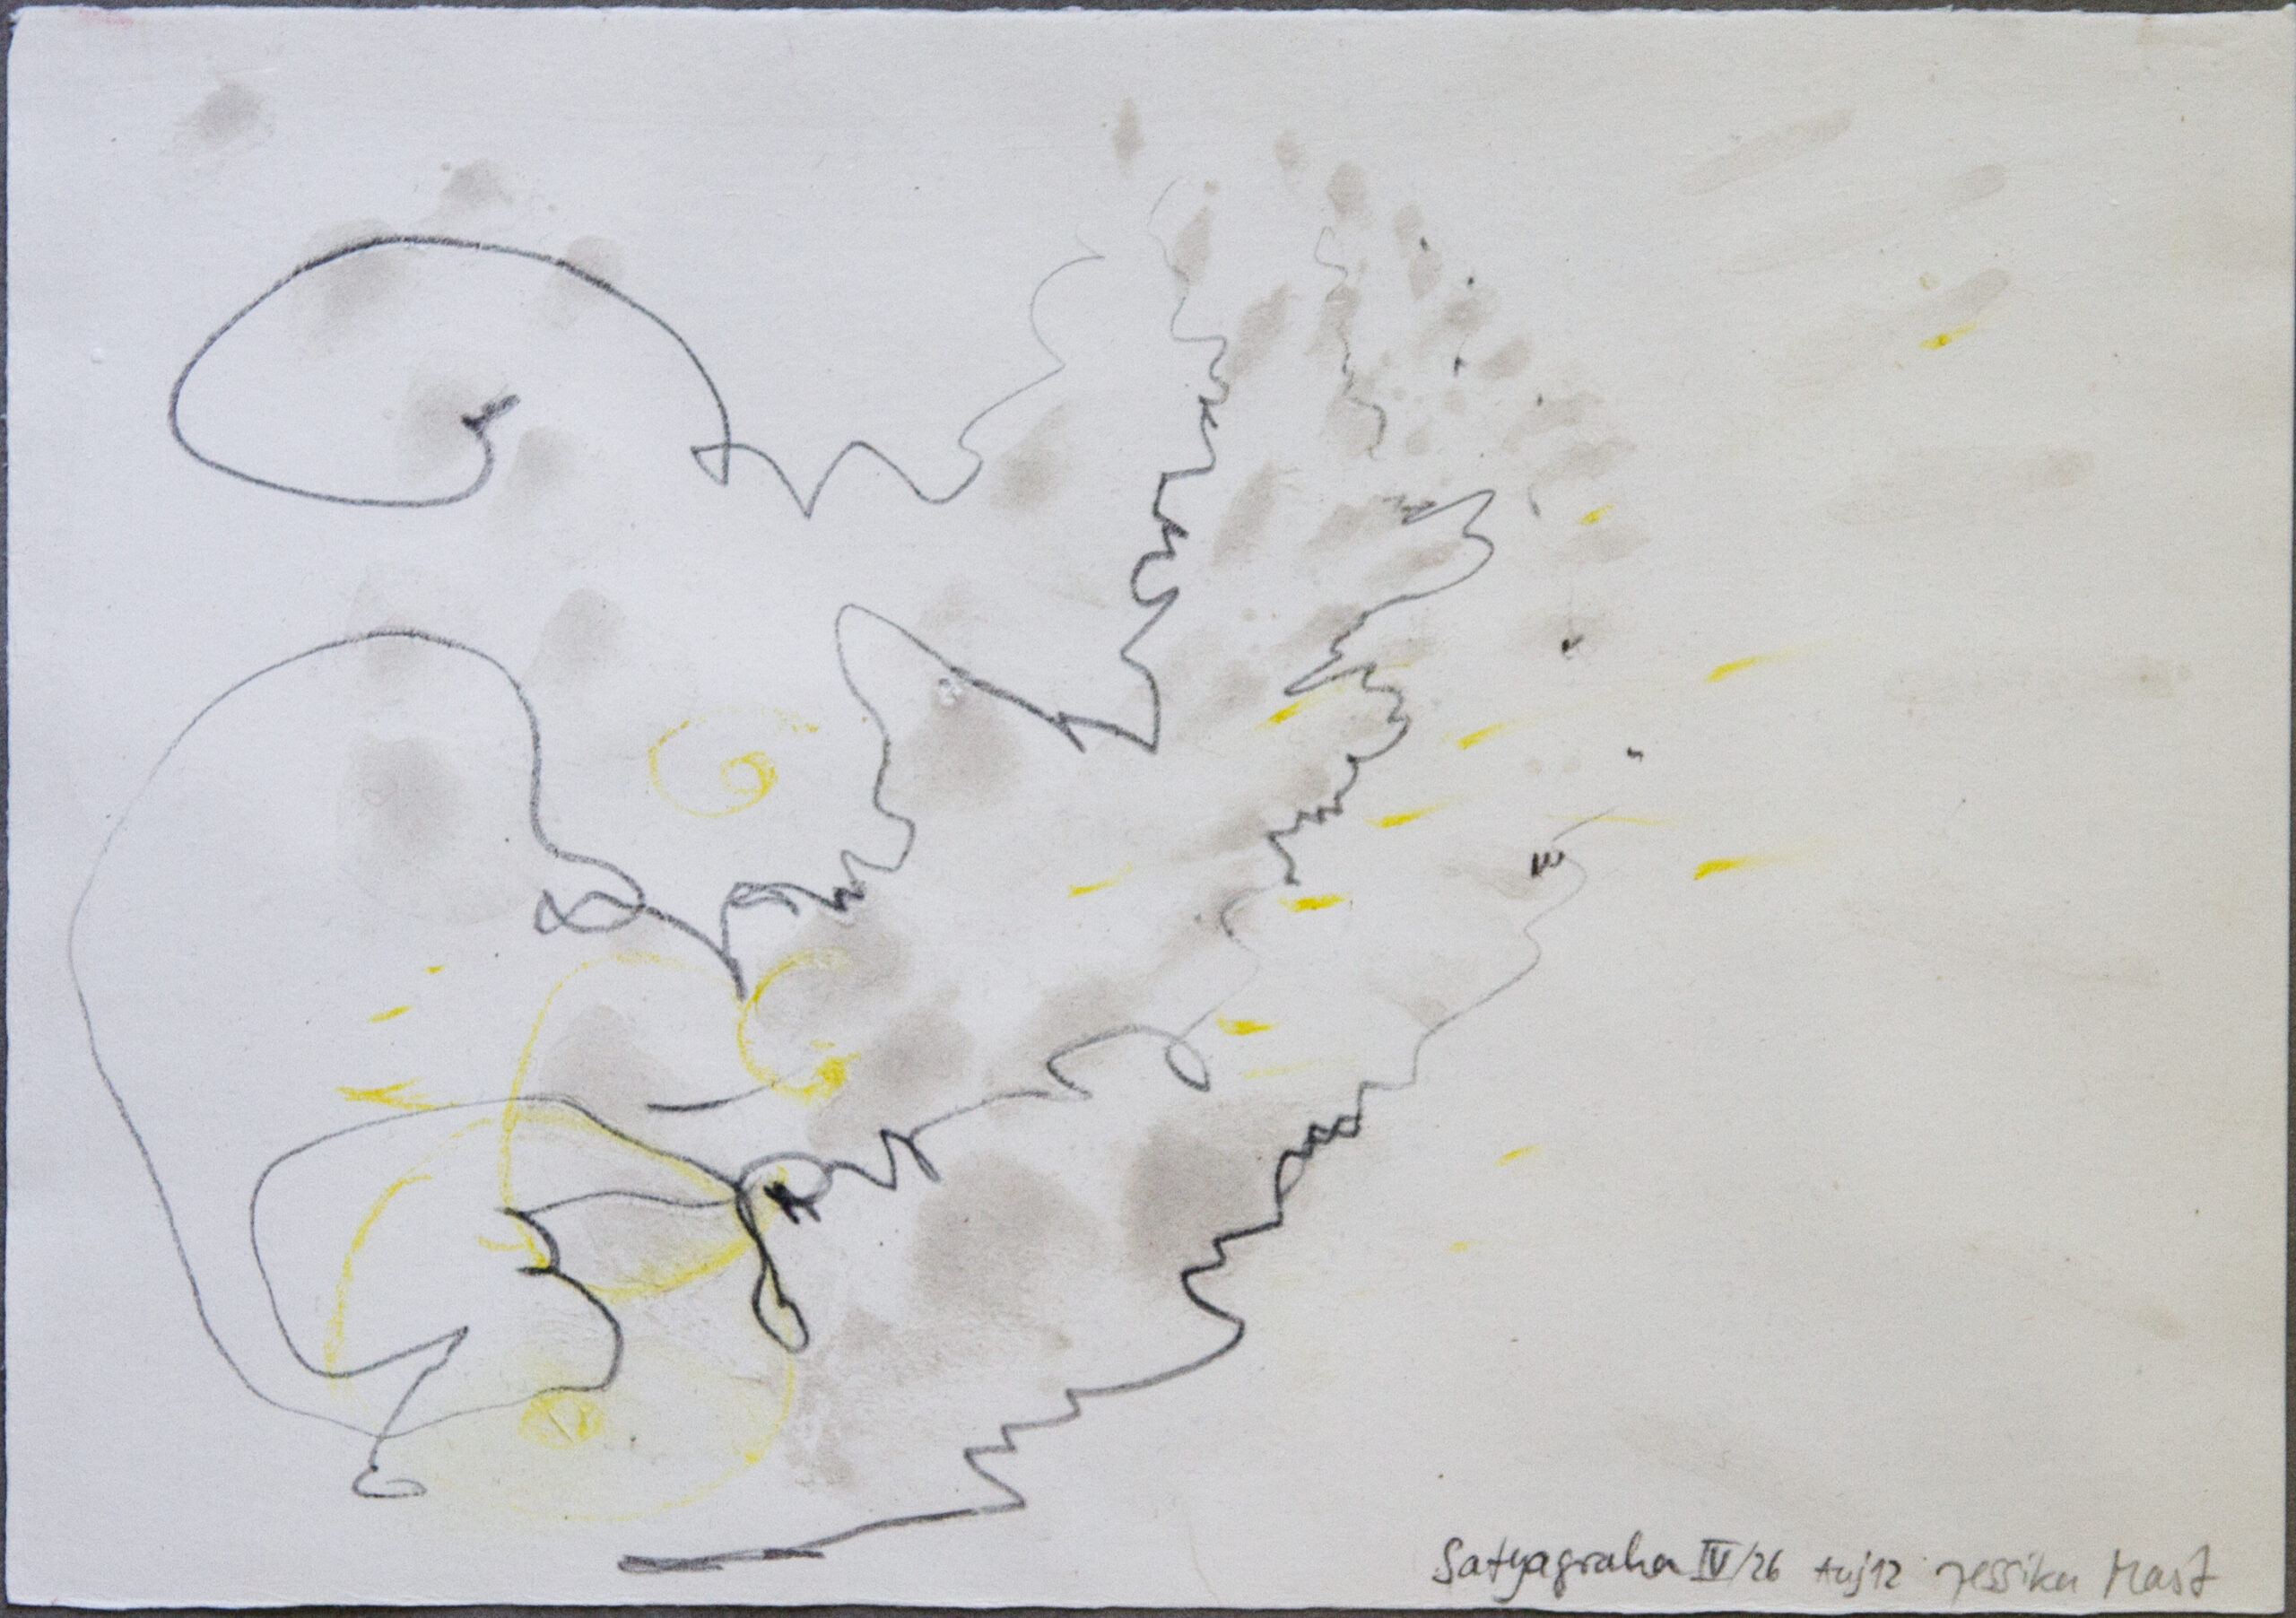 Satyagraha IV: 26-teilige Serie,Gesteinsmehle, Kreide, Bleistift, Pigmente auf Papier,August 2012